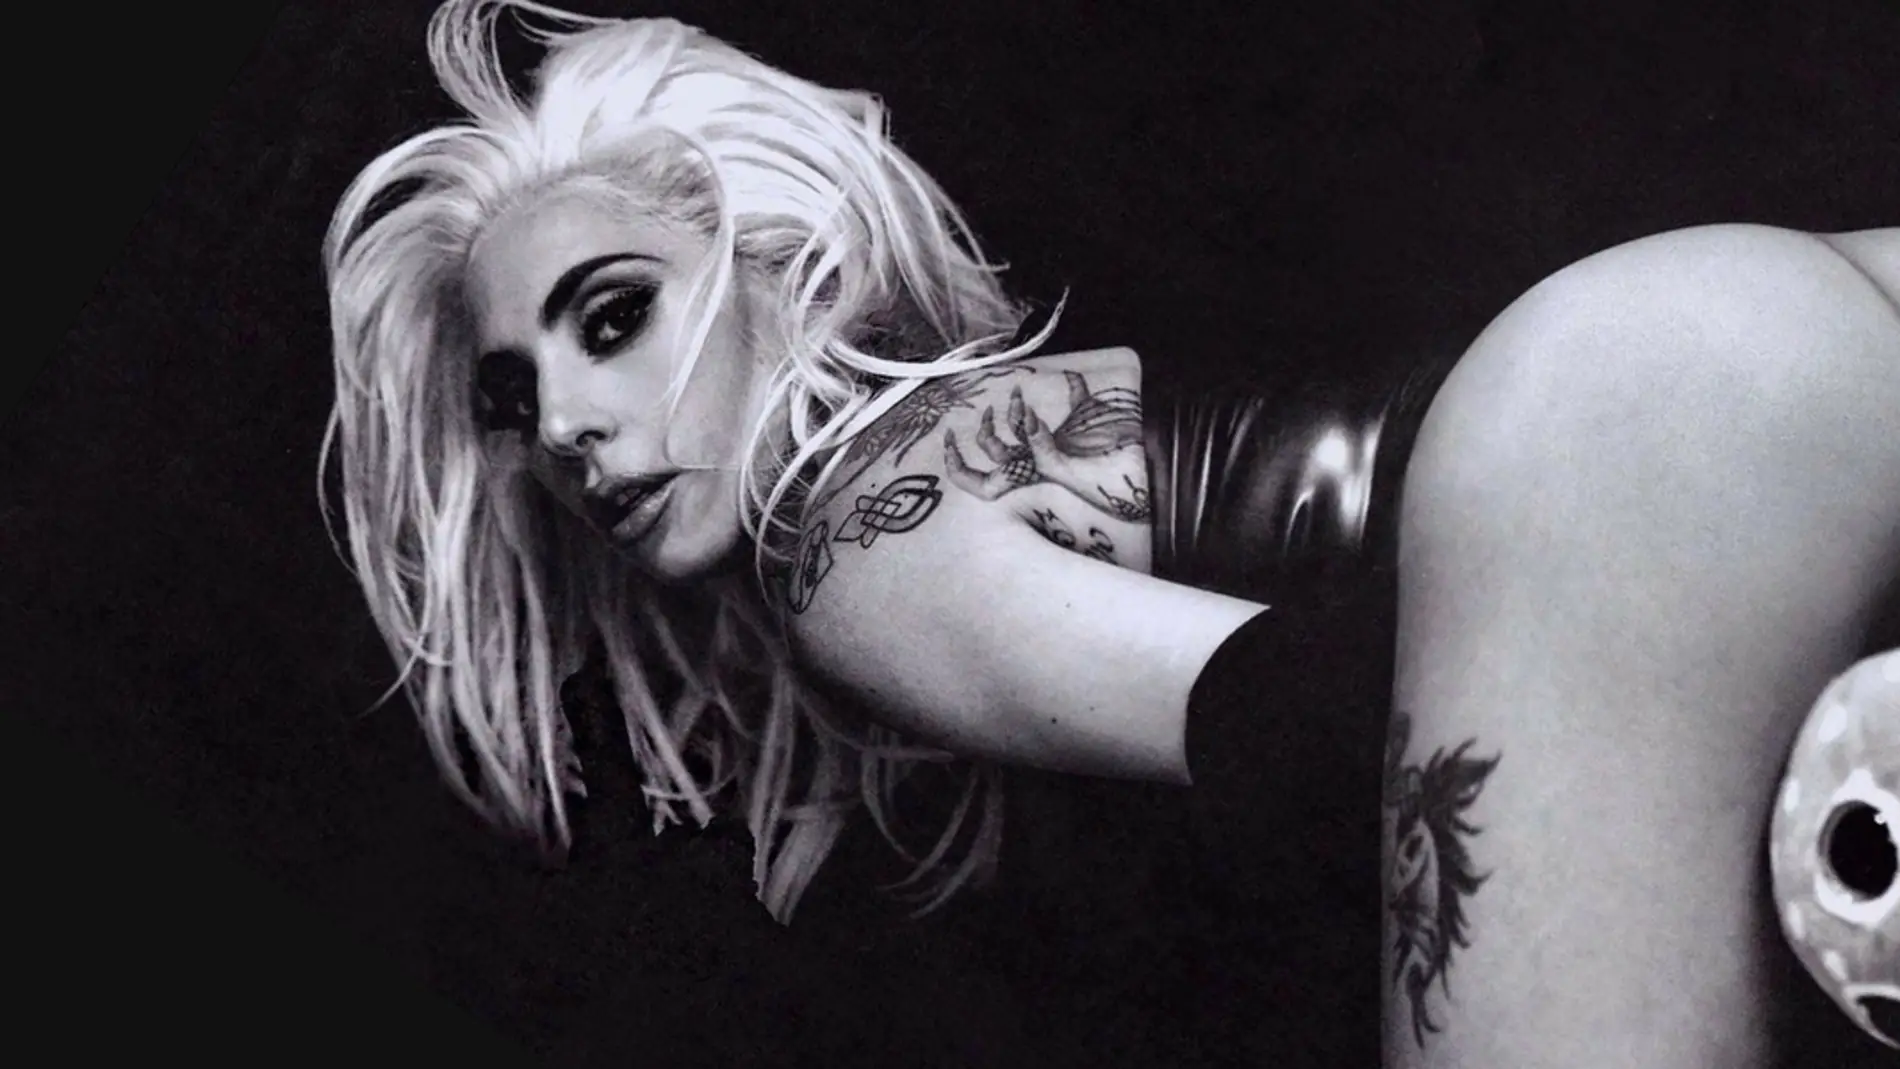 Lady Gaga en la sesión de fotos de Eli Russell Linnetz